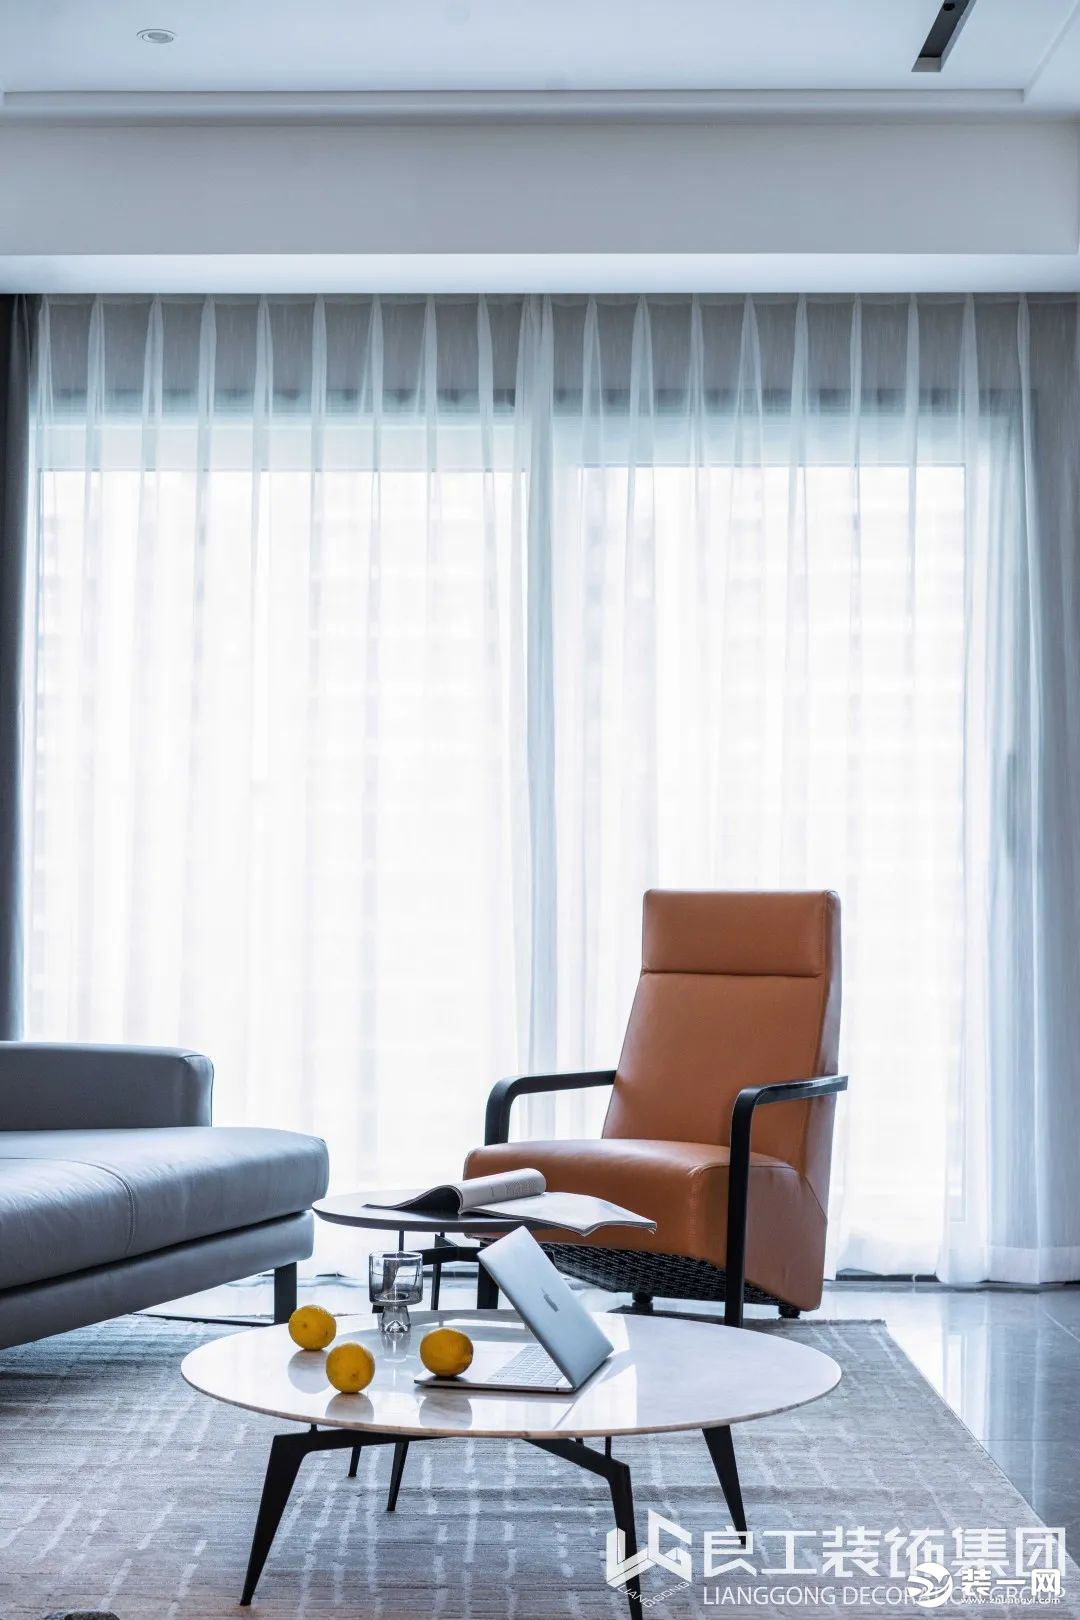 灰咖色的异形转角沙发细腻了硬朗的格调，暖橙色的真皮单人椅打破了暗沉，在空间内绽放着异彩。